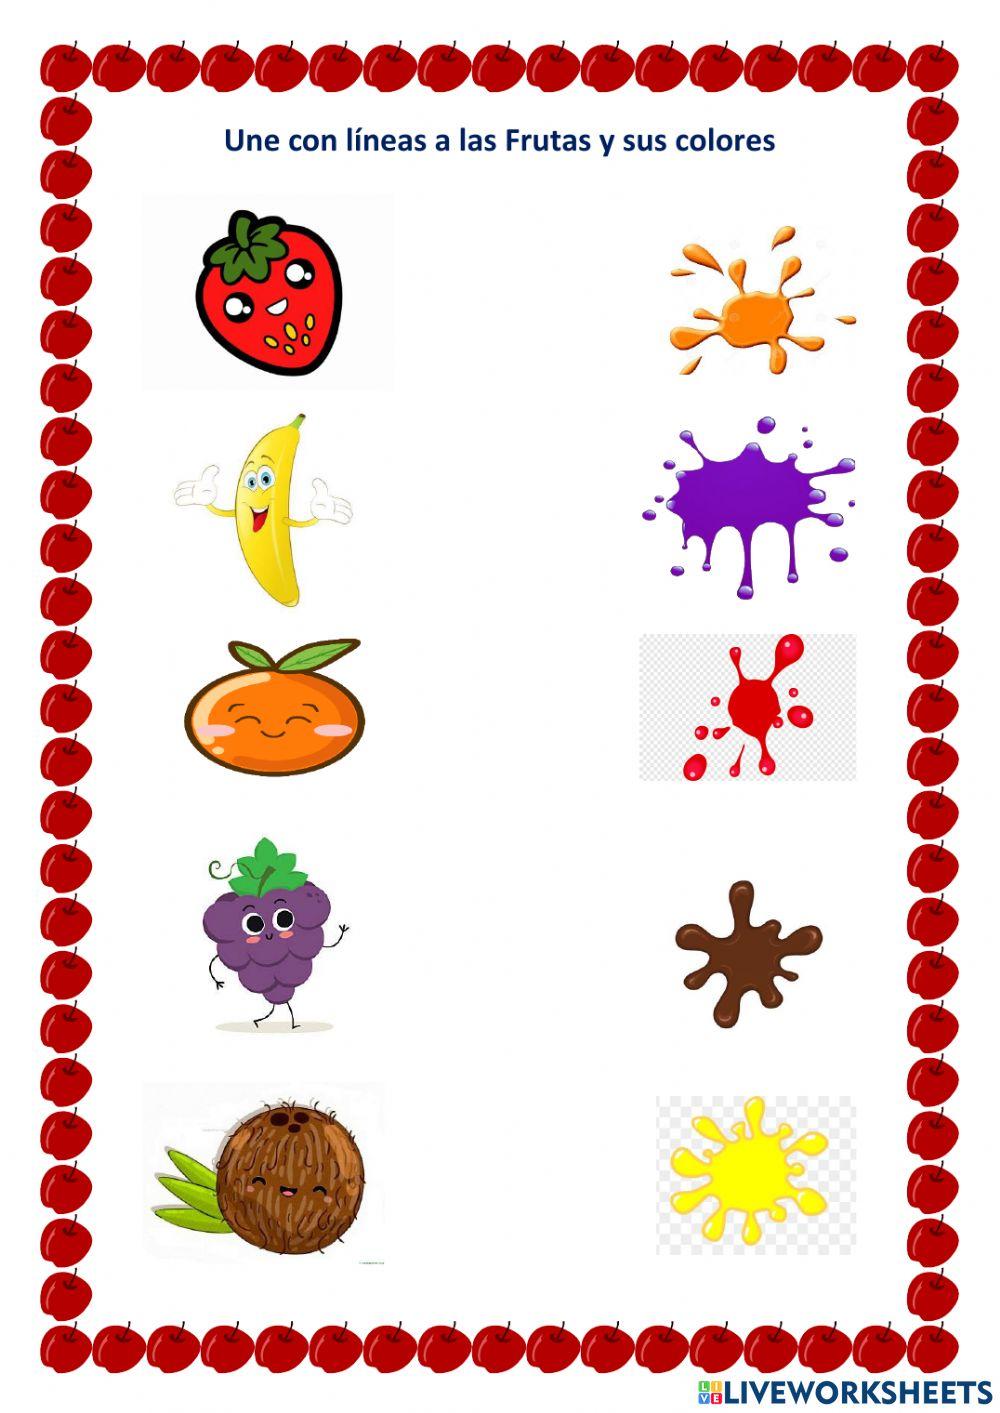 Une con líneas a las Frutas y sus colores